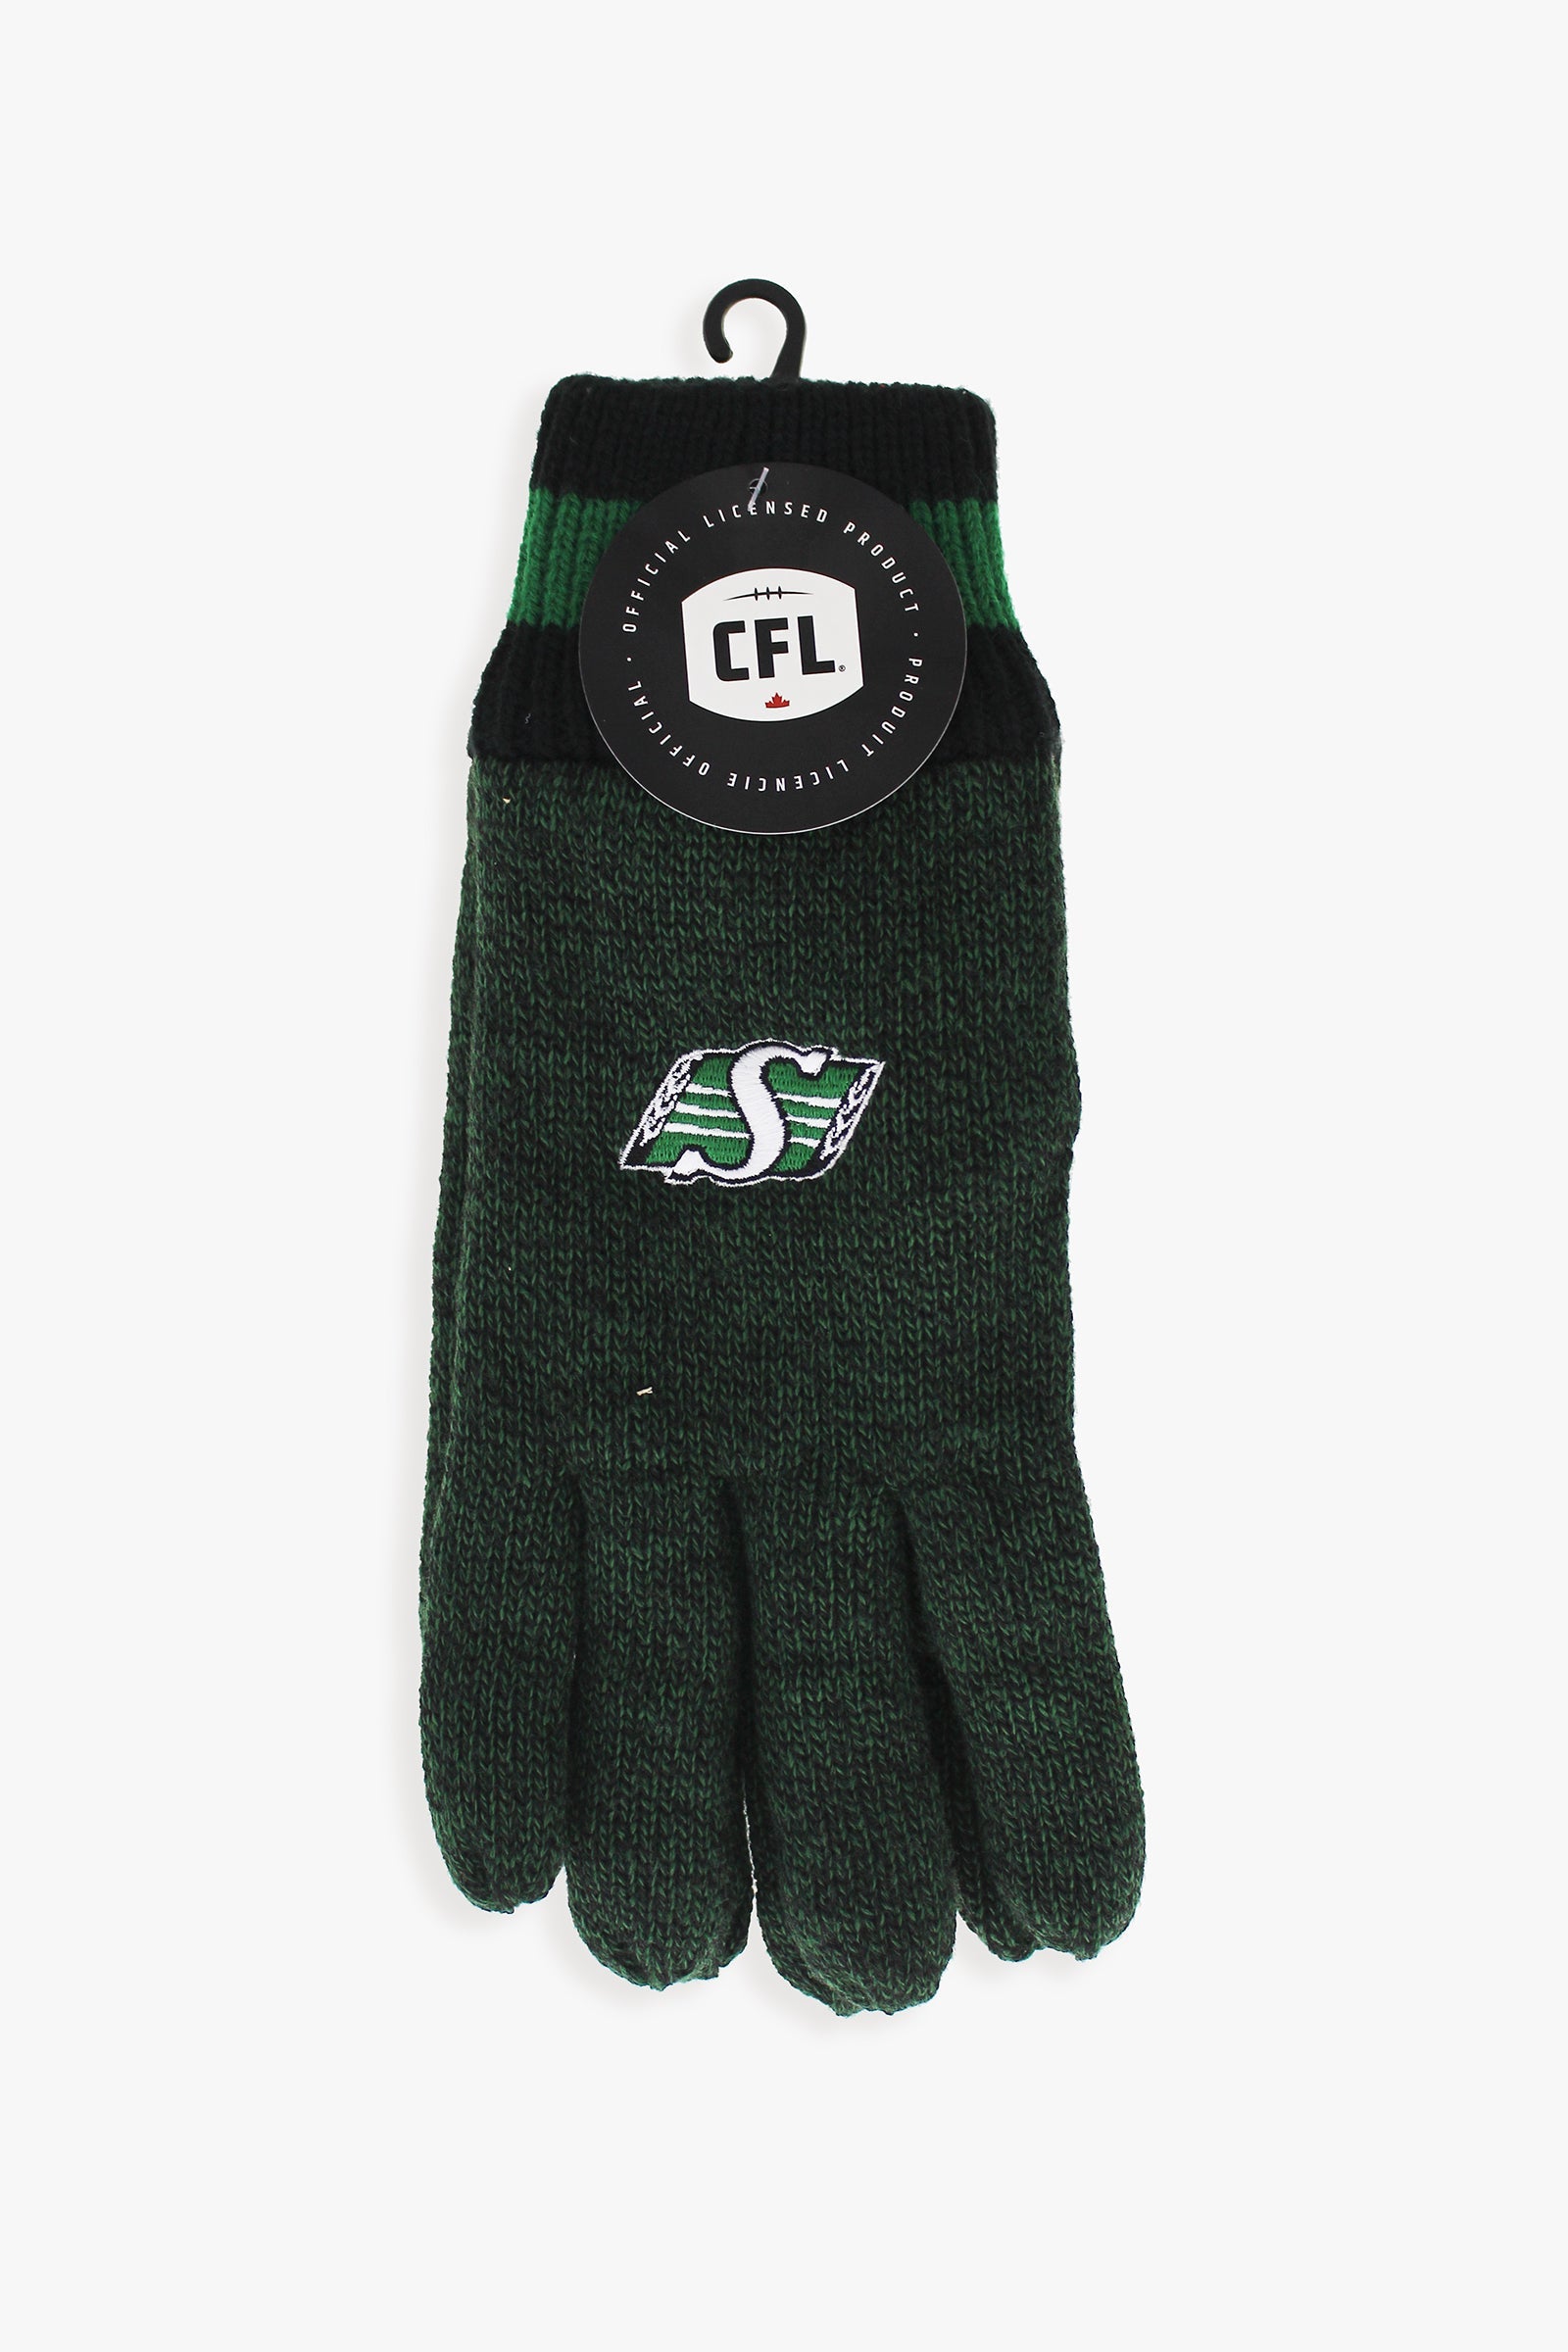 Gertex CFL Saskatchewan Roughriders Men's Winter Thermal Gloves